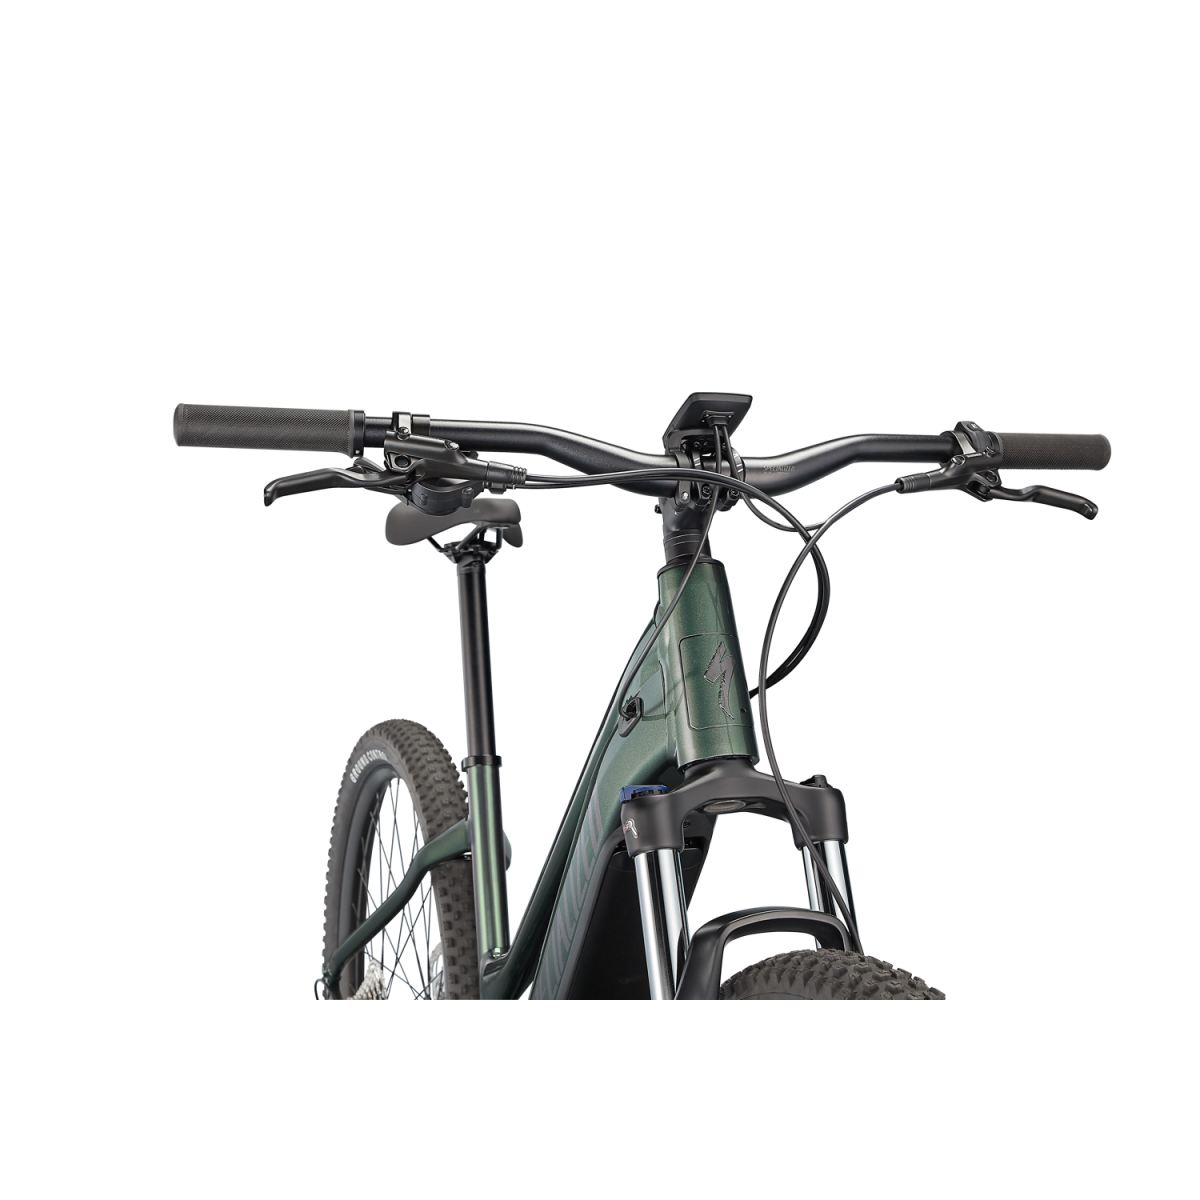 Specialized Turbo Tero 3.0 Step-Through elektrinis dviratis / Oak Green Metallic